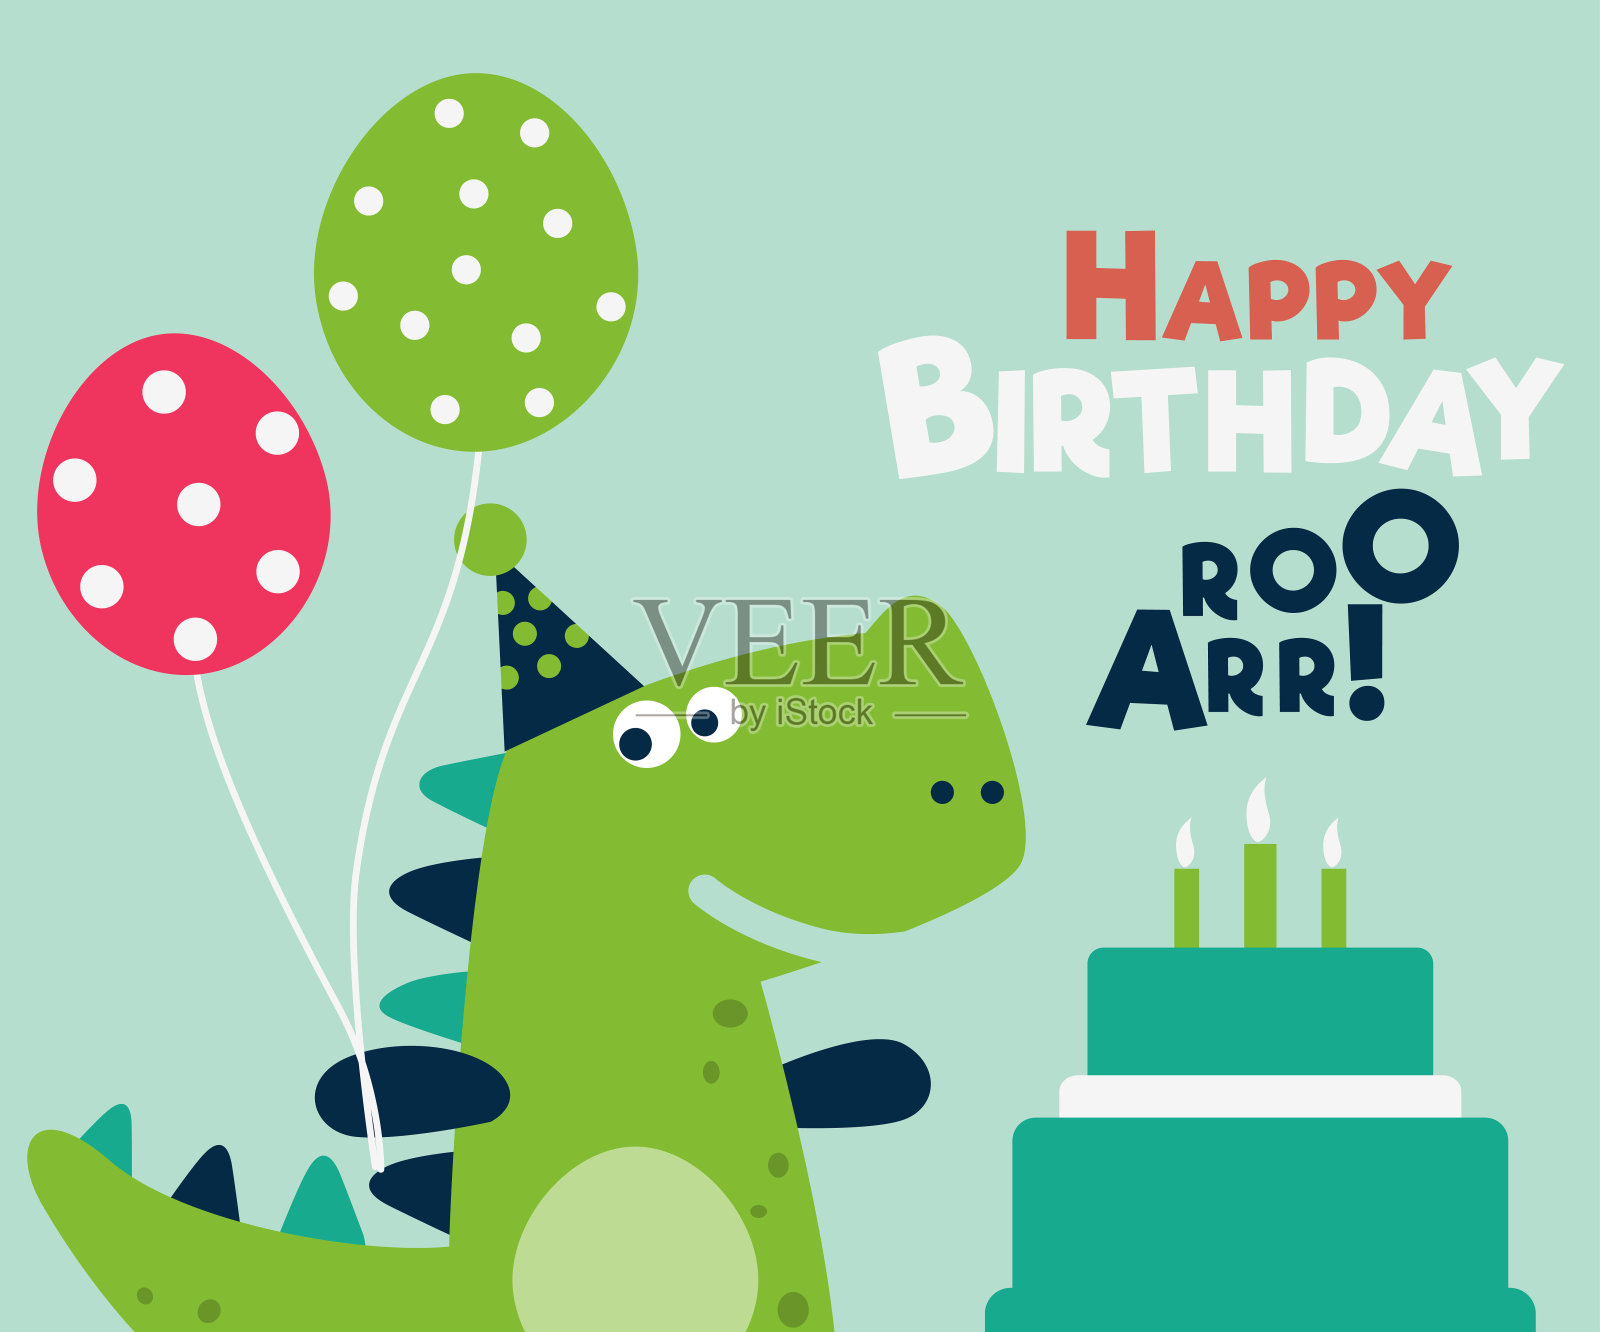 生日快乐-可爱的向量卡与有趣的恐龙设计模板素材